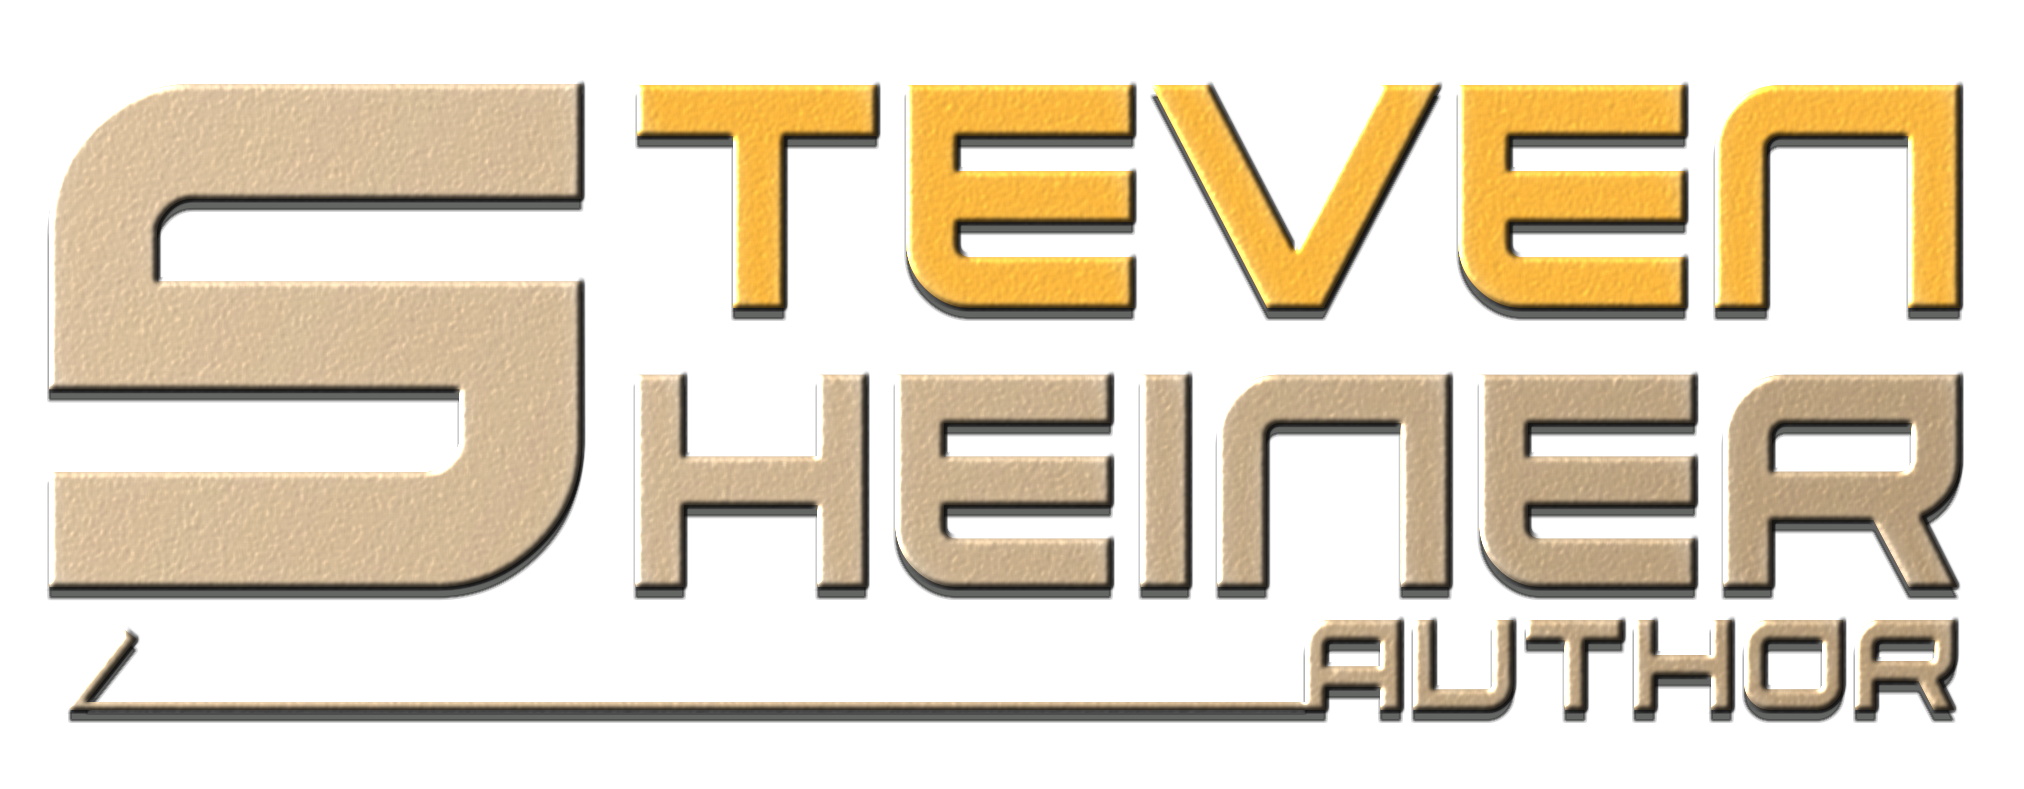 Steven Sheiner Author